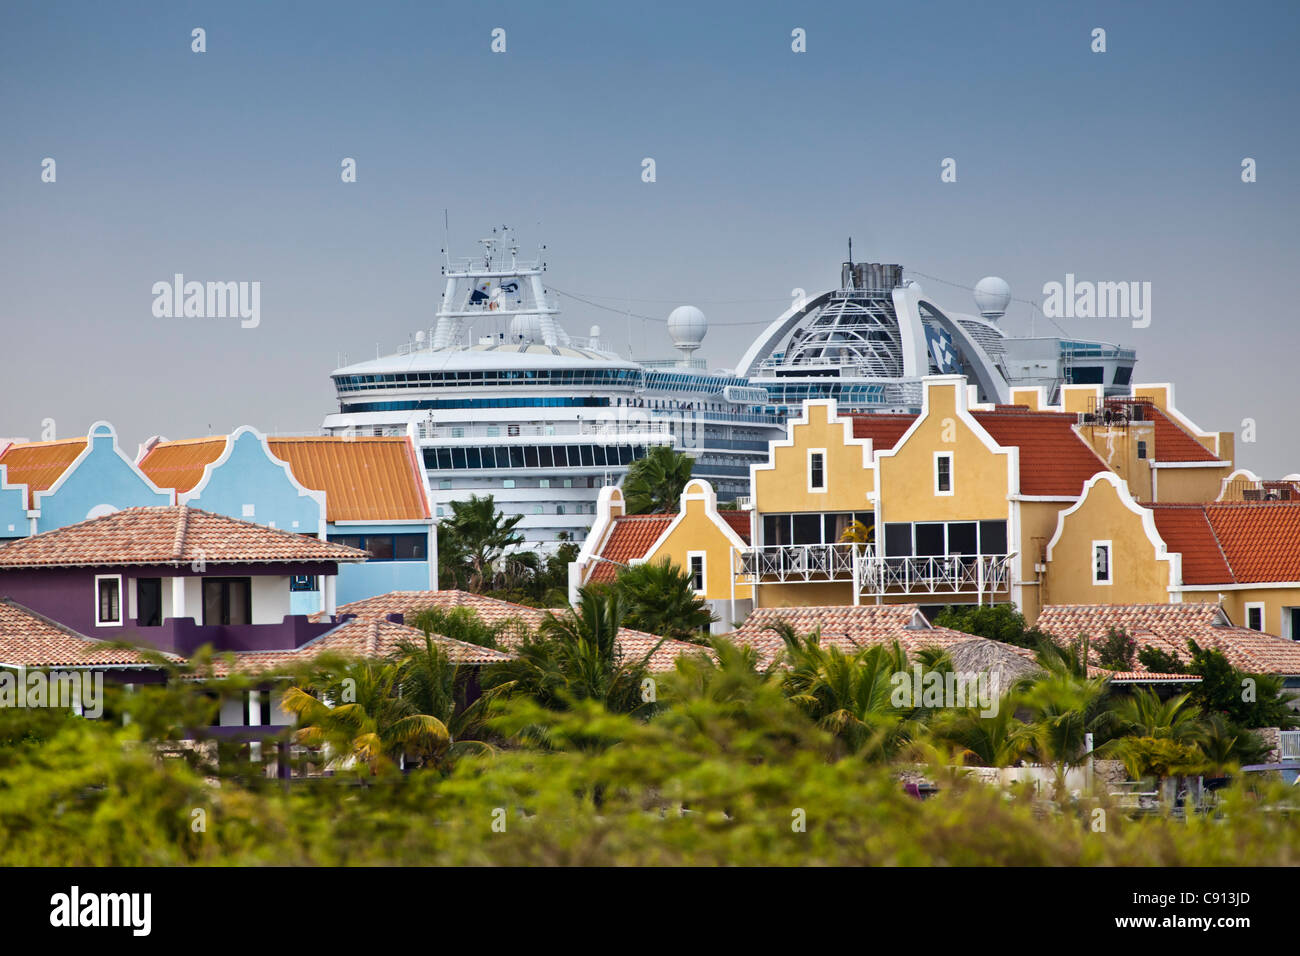 Der Niederlande, Insel Bonaire, Niederländische Karibik Kreuzfahrtschiff im Hafen. Ferienhäuser in alten holländischen Architektur-Stil. Stockfoto